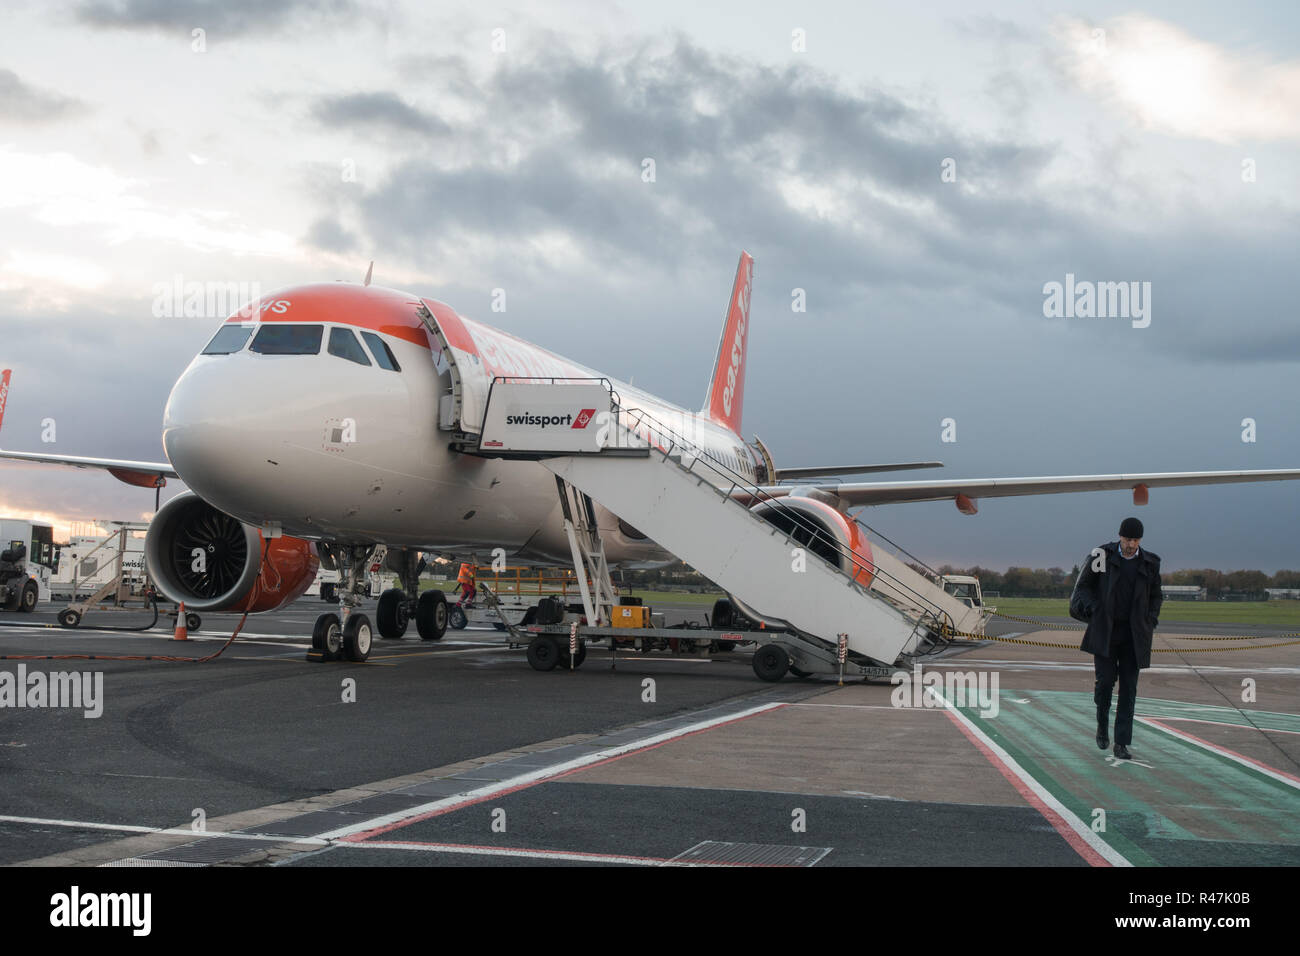 Homme seul débarquement des passagers d'un vol Easyjet 319 avions à l'aéroport international de Belfast lors d'une froide journée d'automne de nuages gris. Banque D'Images